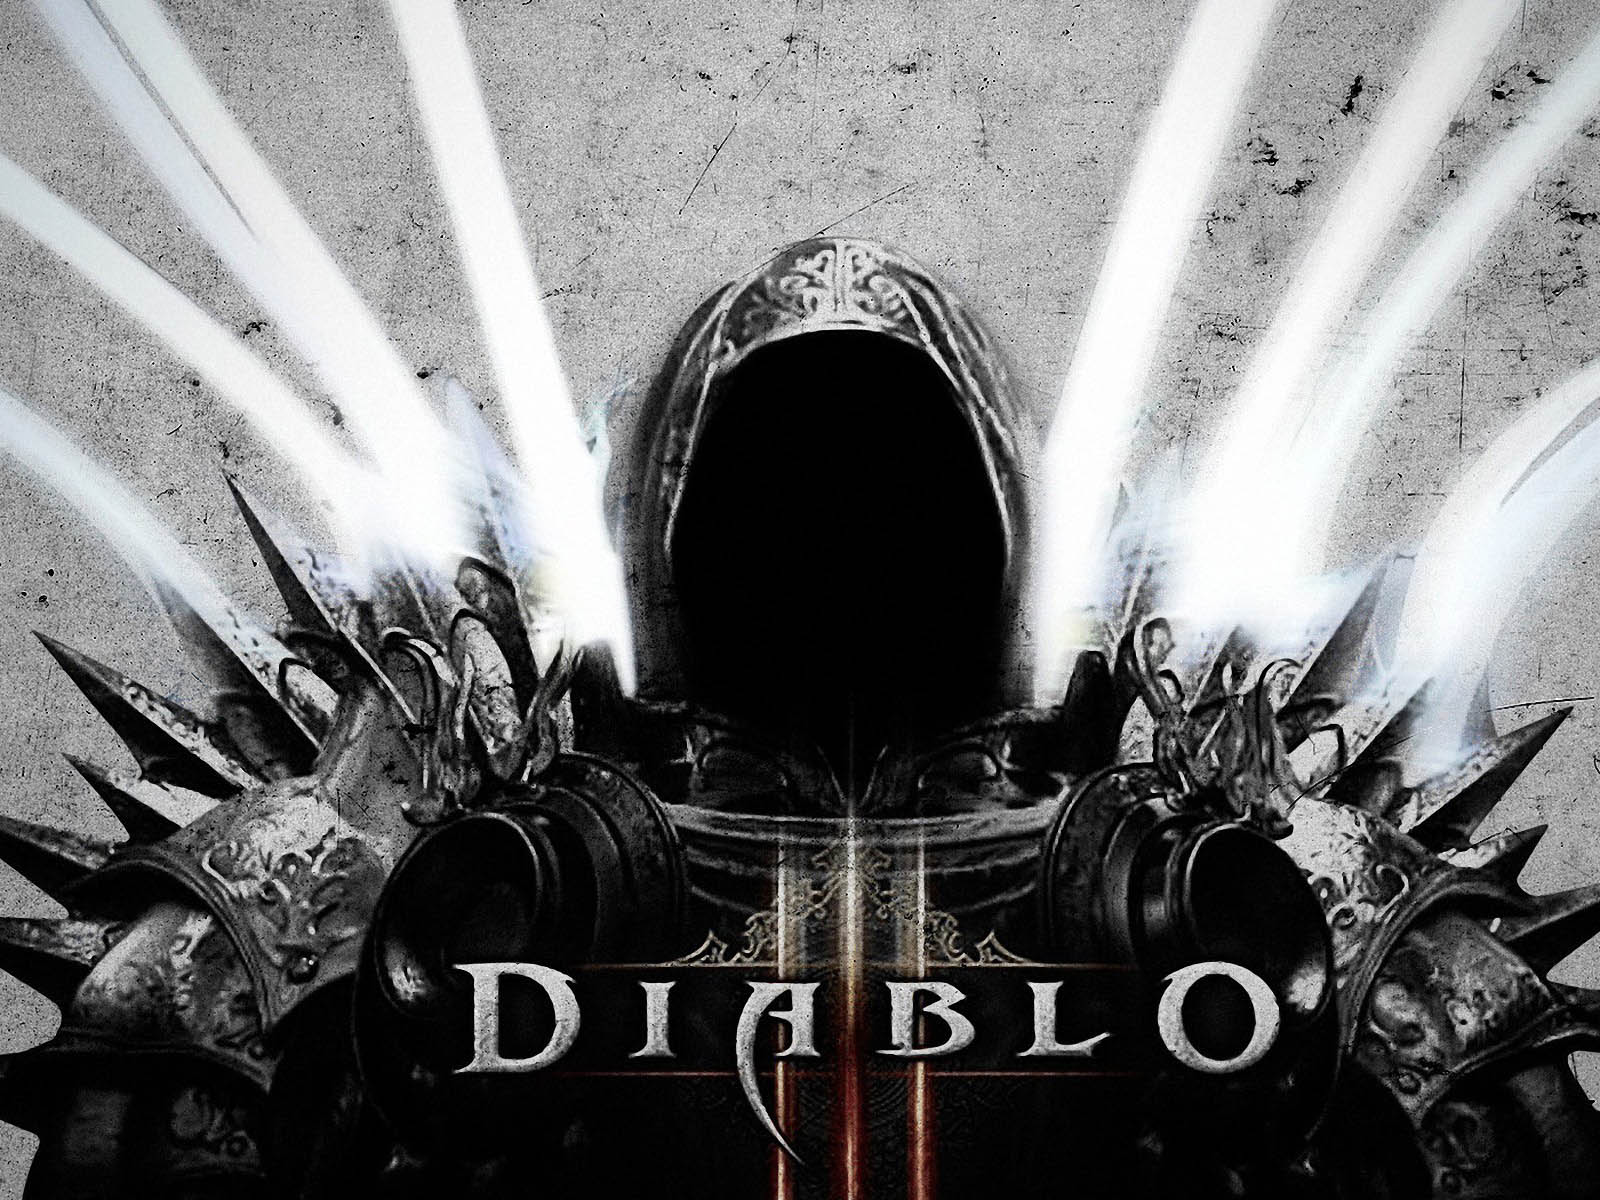 Diablo 3 wallpaper hd Wallpapers - Free diablo 3 wallpaper hd